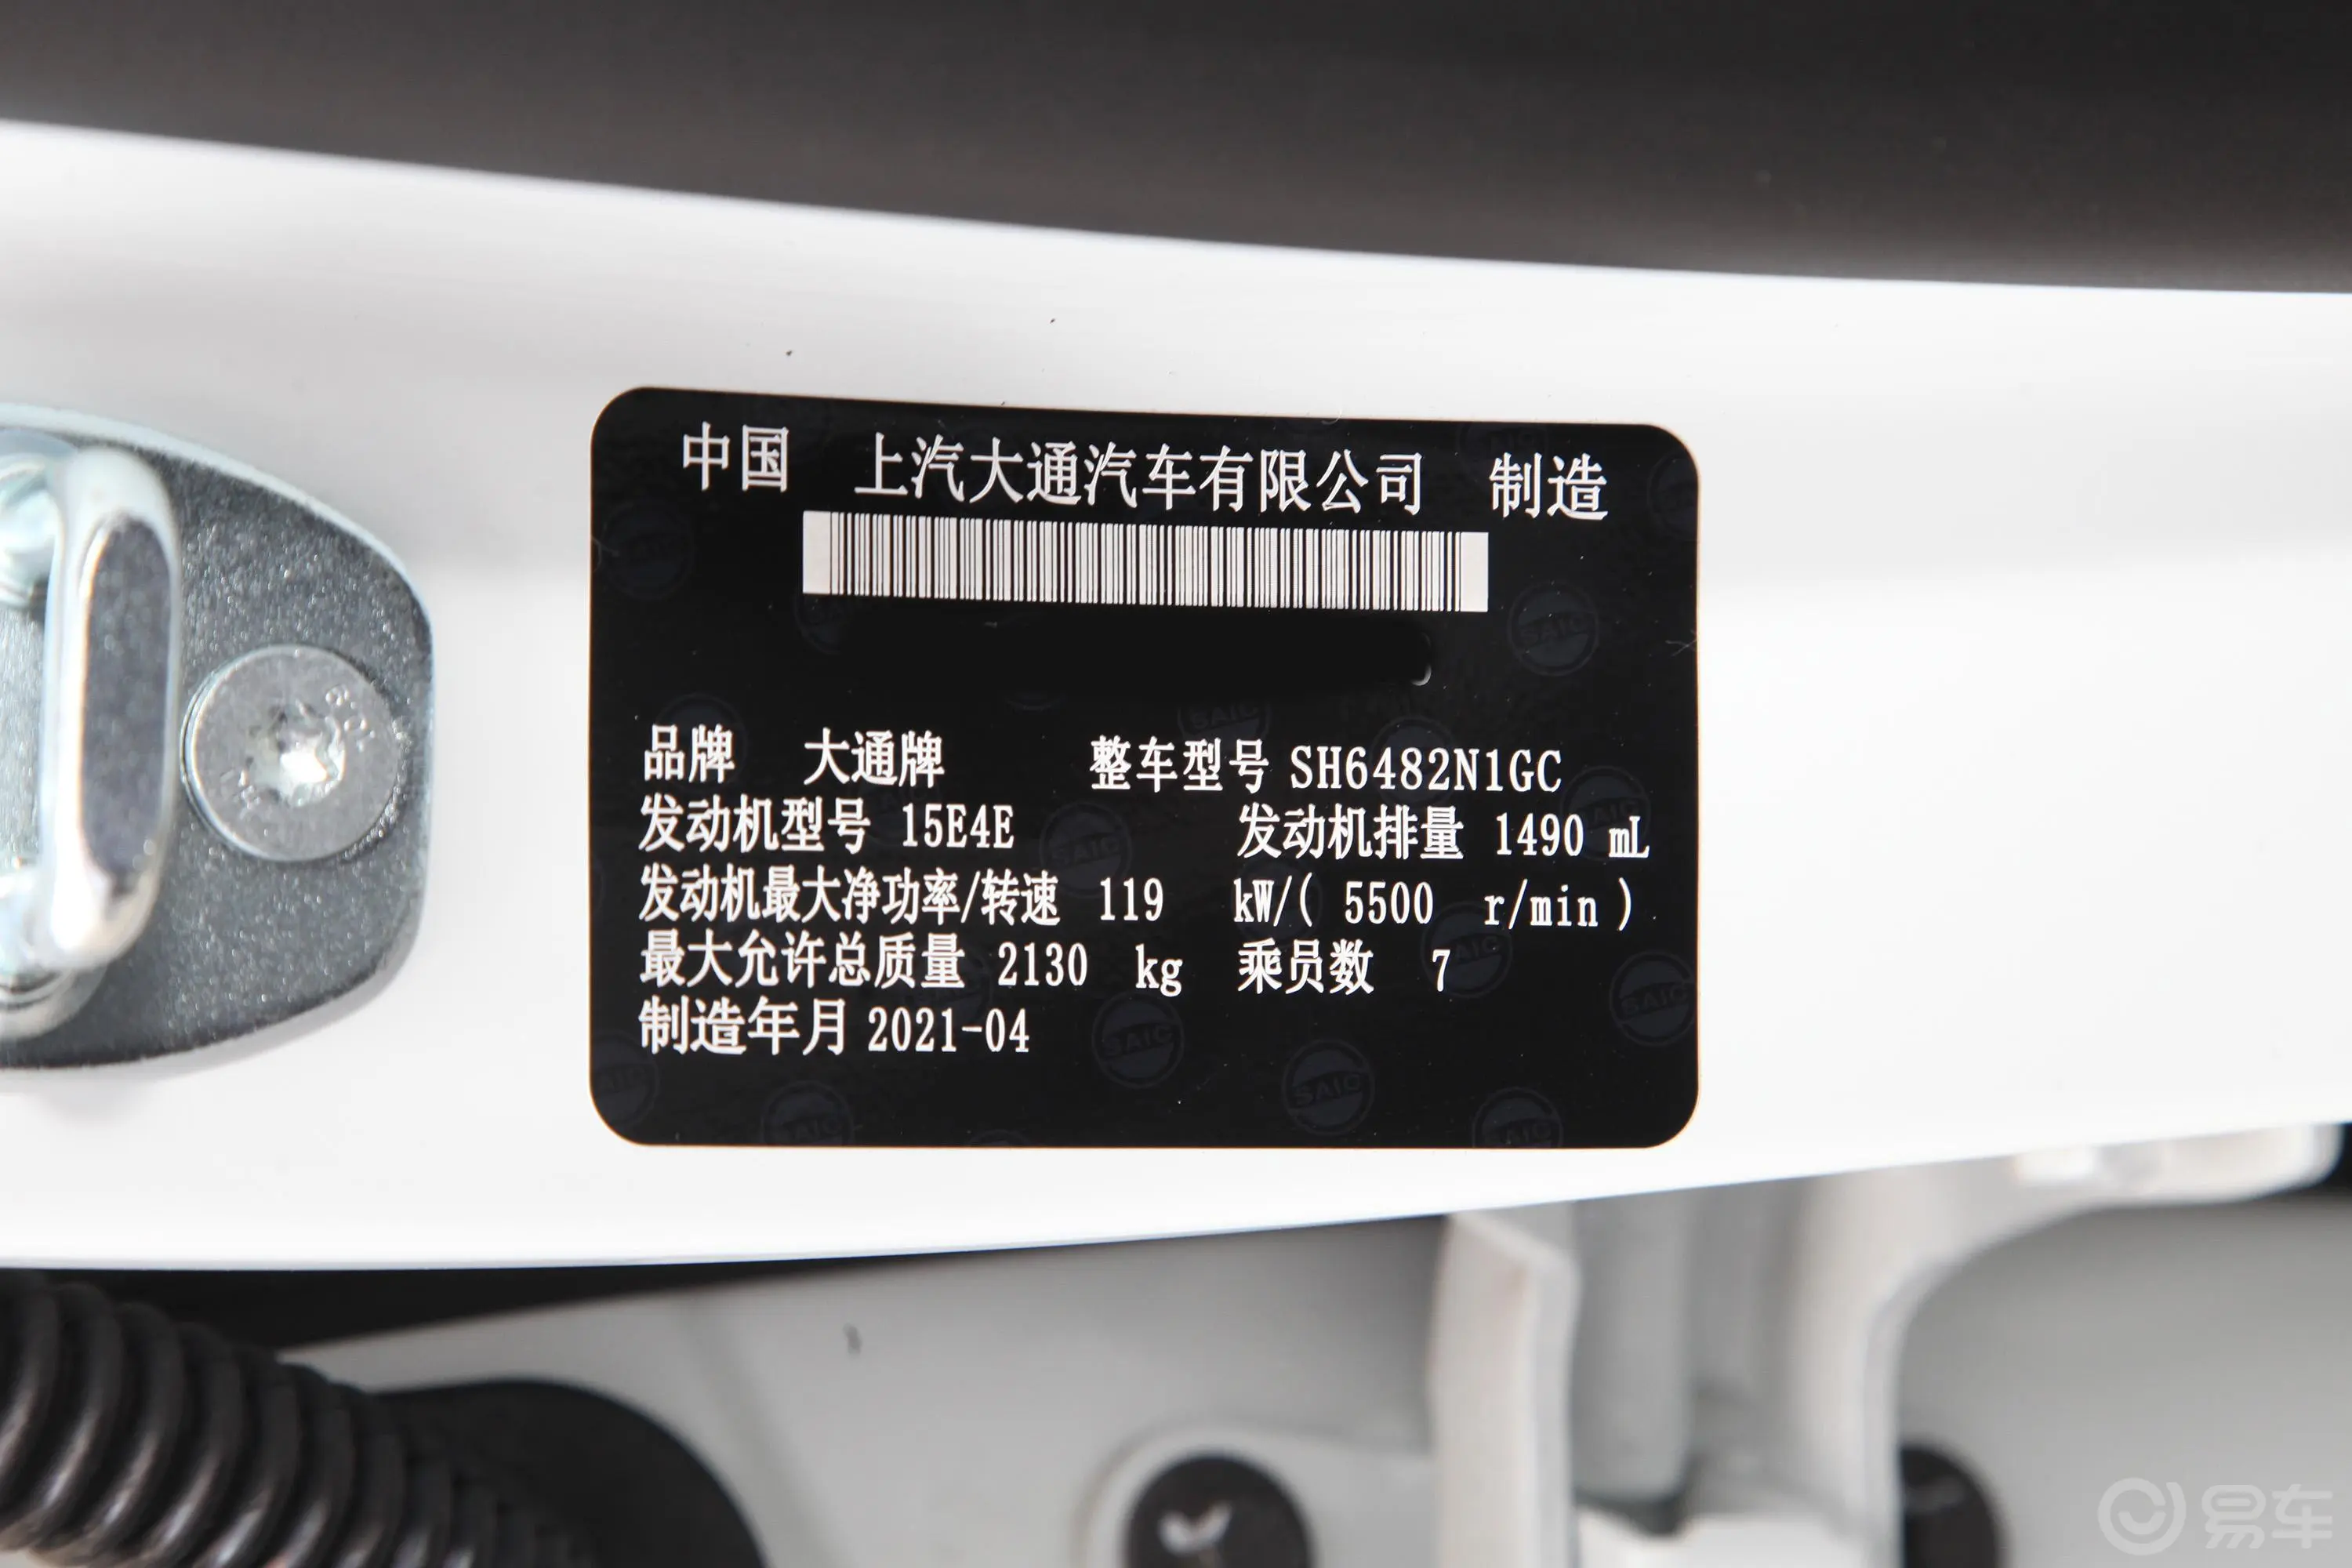 大通G50PLUS 1.5T 双离合幸福巡航版车辆信息铭牌